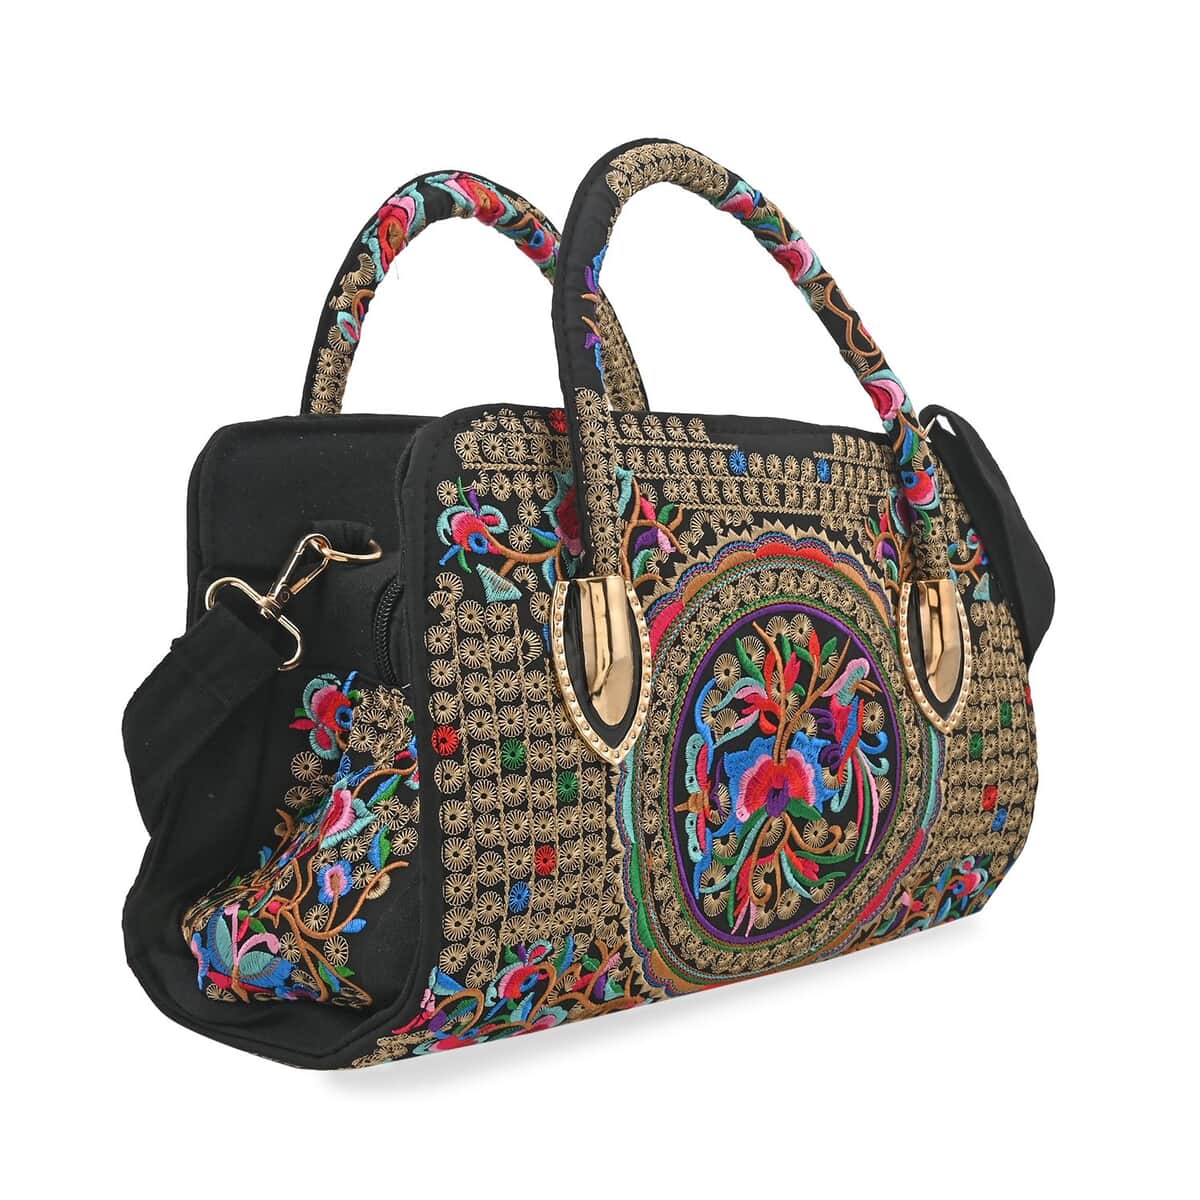 Multi Color & Floral Embroidered Handbag with Shoulder Strap image number 1